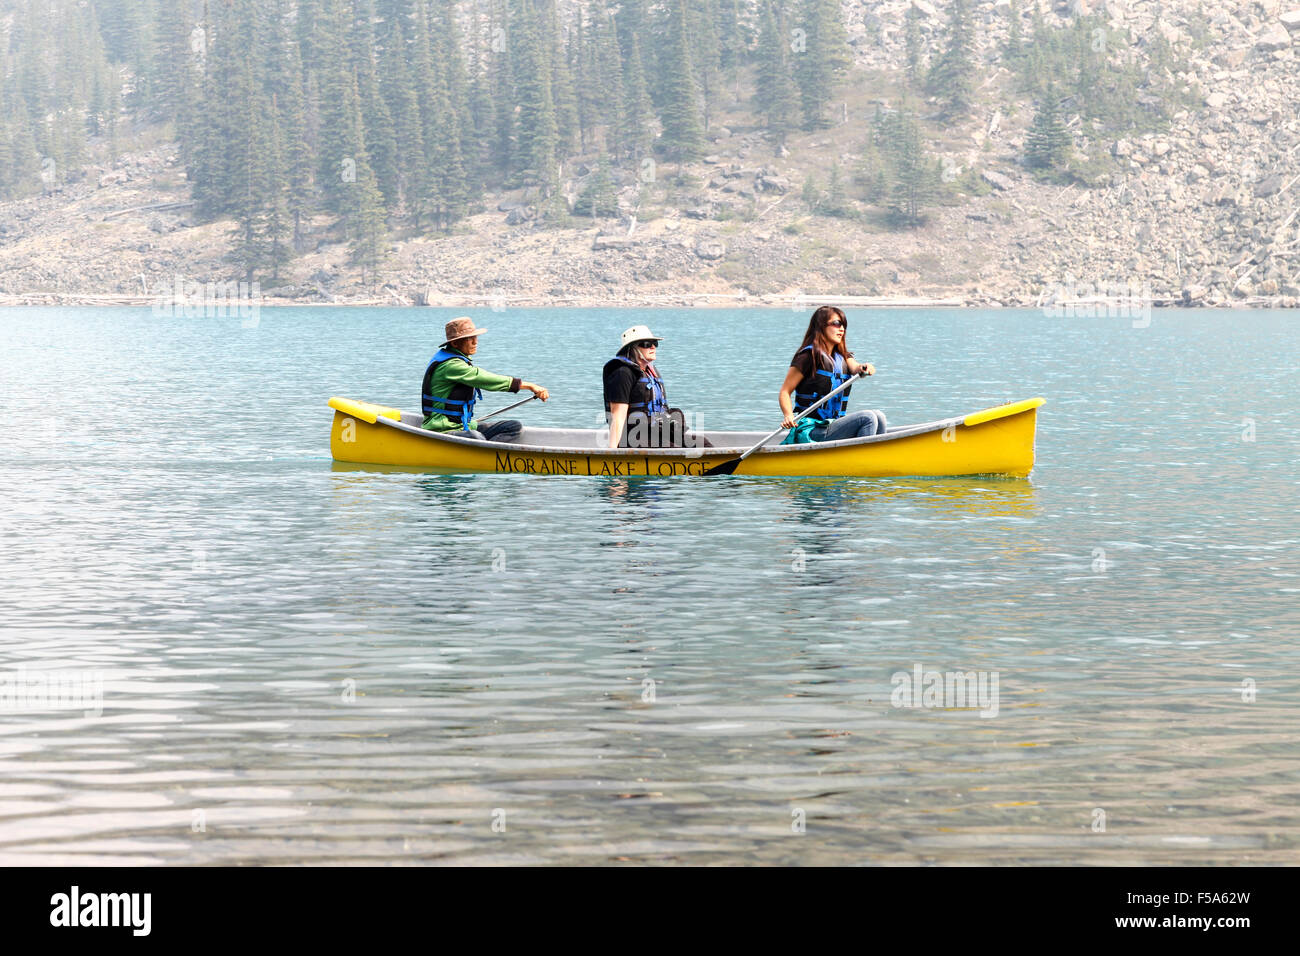 3 personas remando en una canoa en el lago Moraine Parque Nacional Banff Alberta Canada Foto de stock